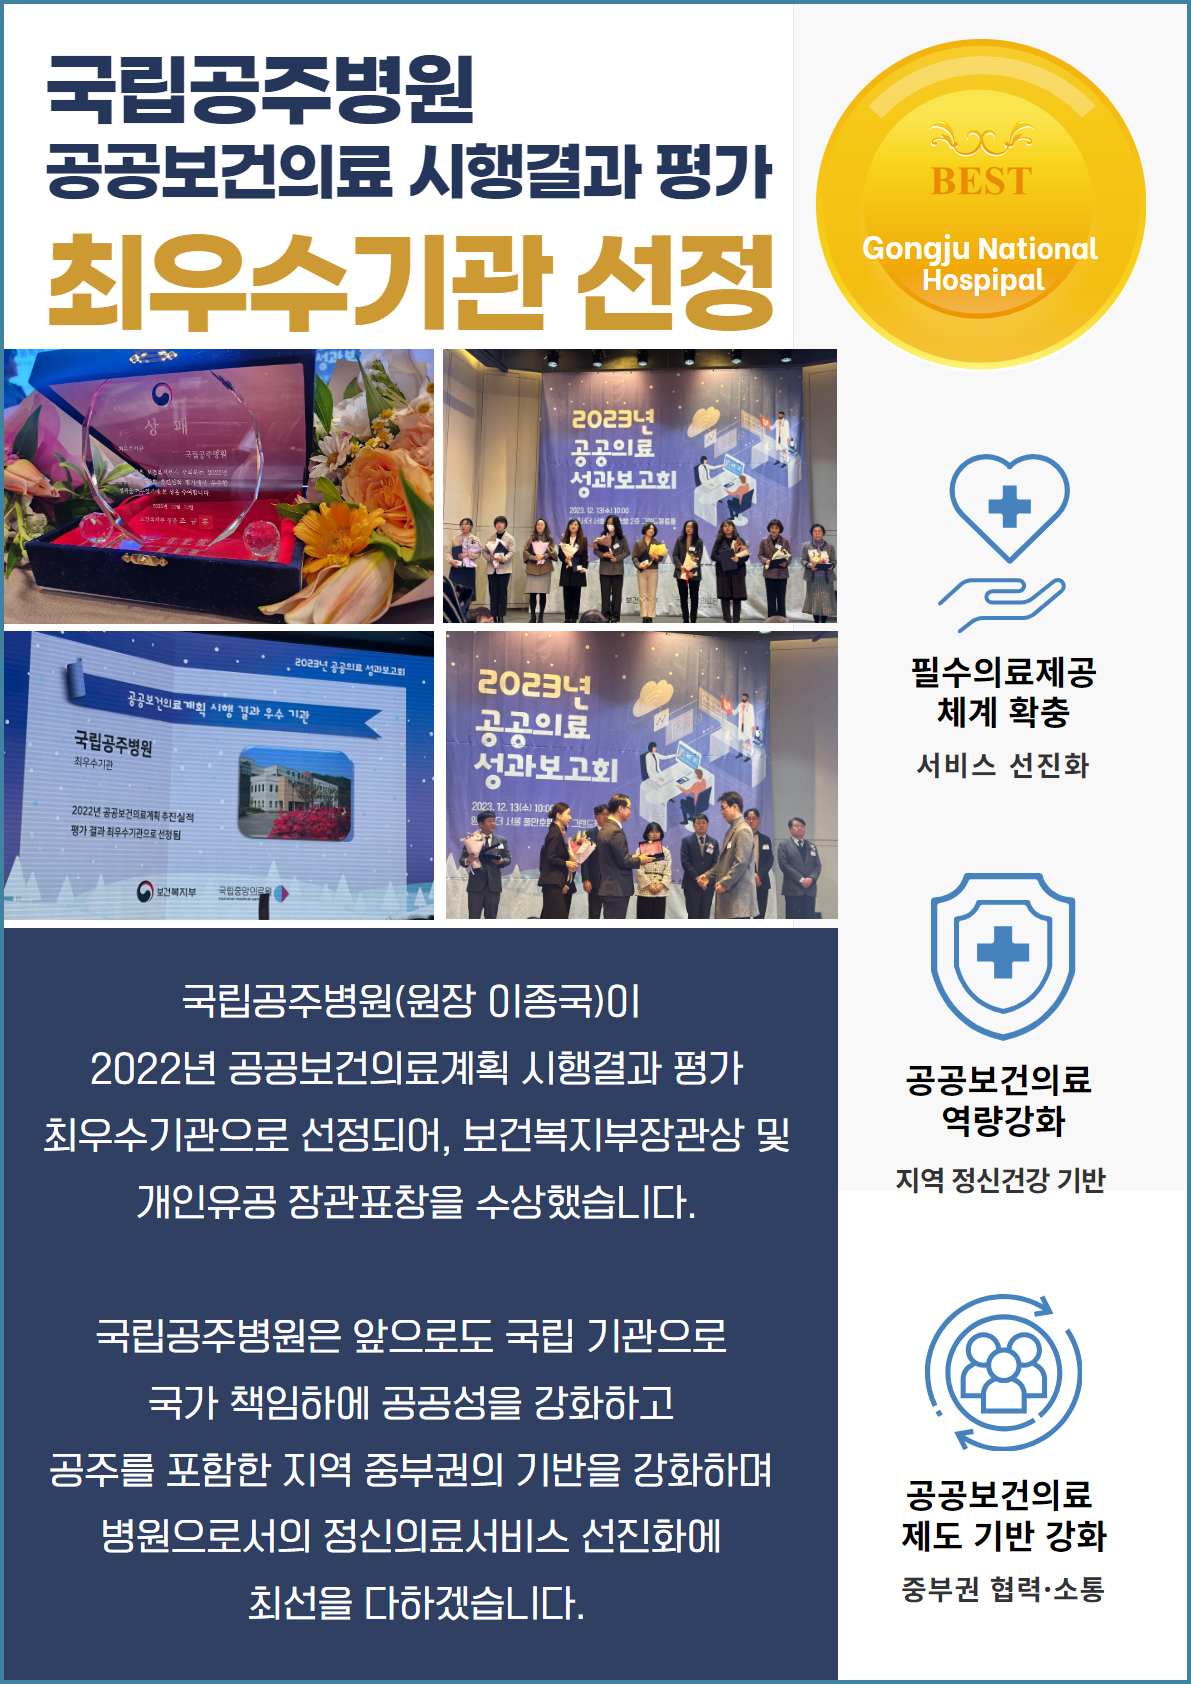 국립공주병원 공공보건의료 시행결과 평가 최우수기관 선정